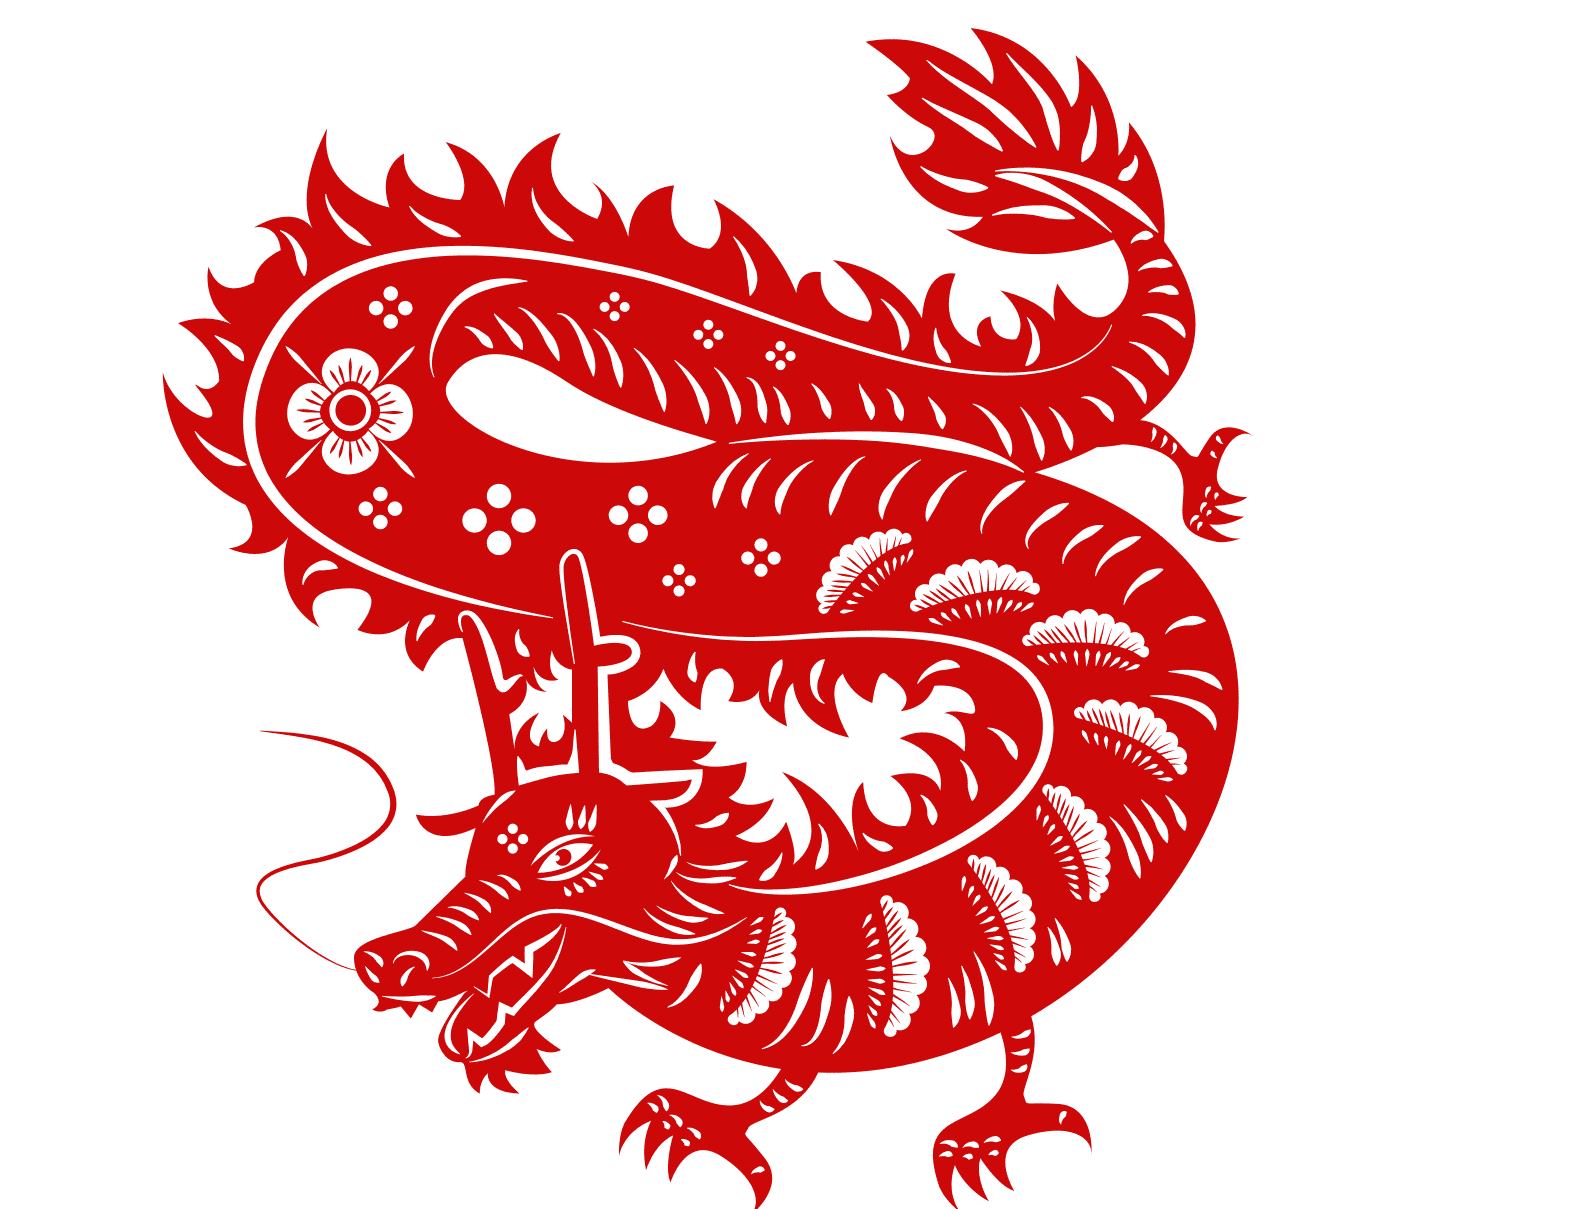 Signo del Año del Dragón || Fuente: Shutterstock